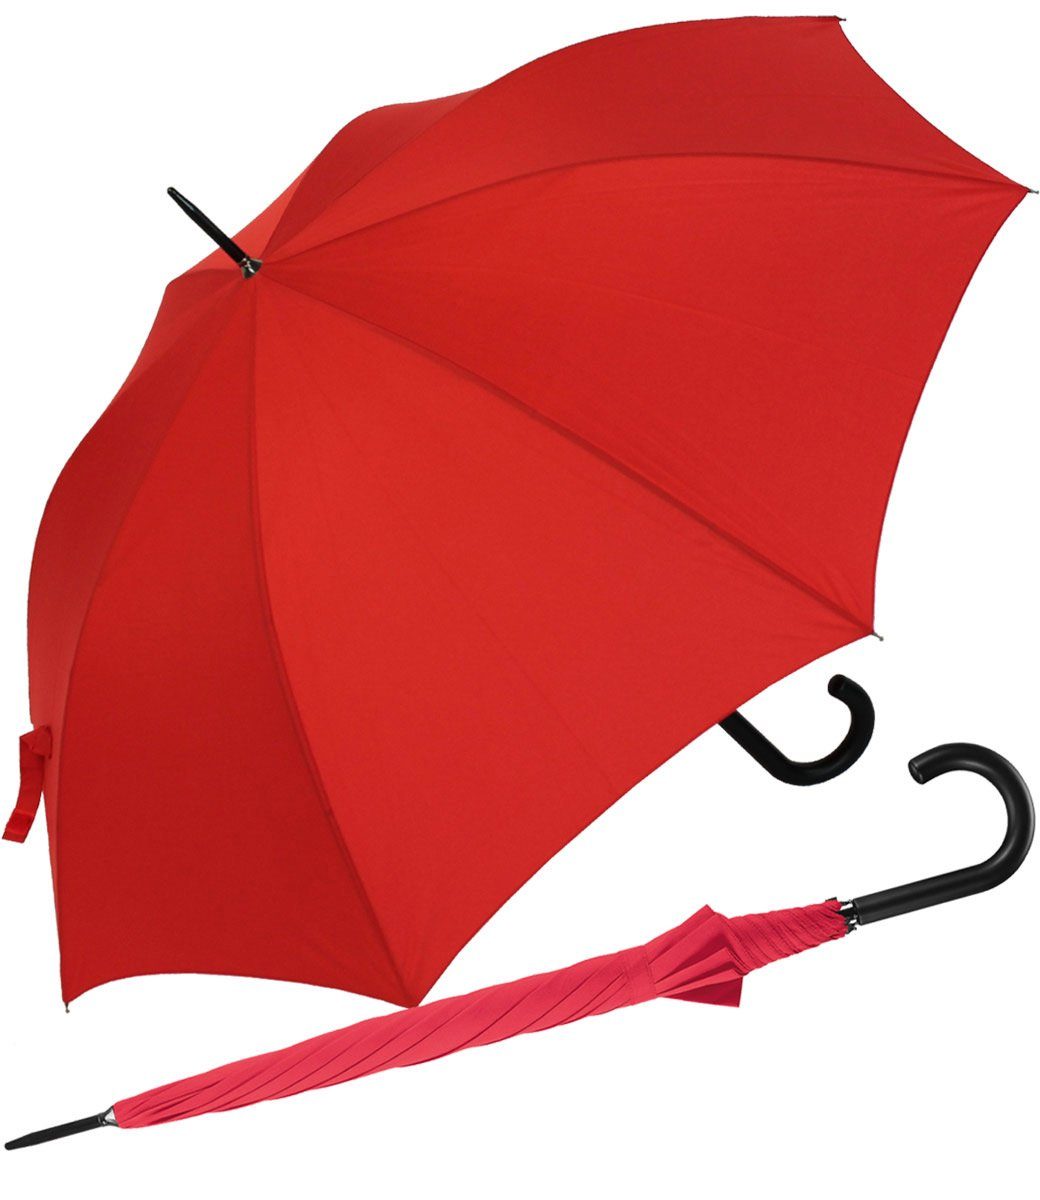 RS-Versand Langregenschirm großer stabiler Regenschirm mit Auf-Automatik, für Damen und Herren in vielen modischen Farben rot